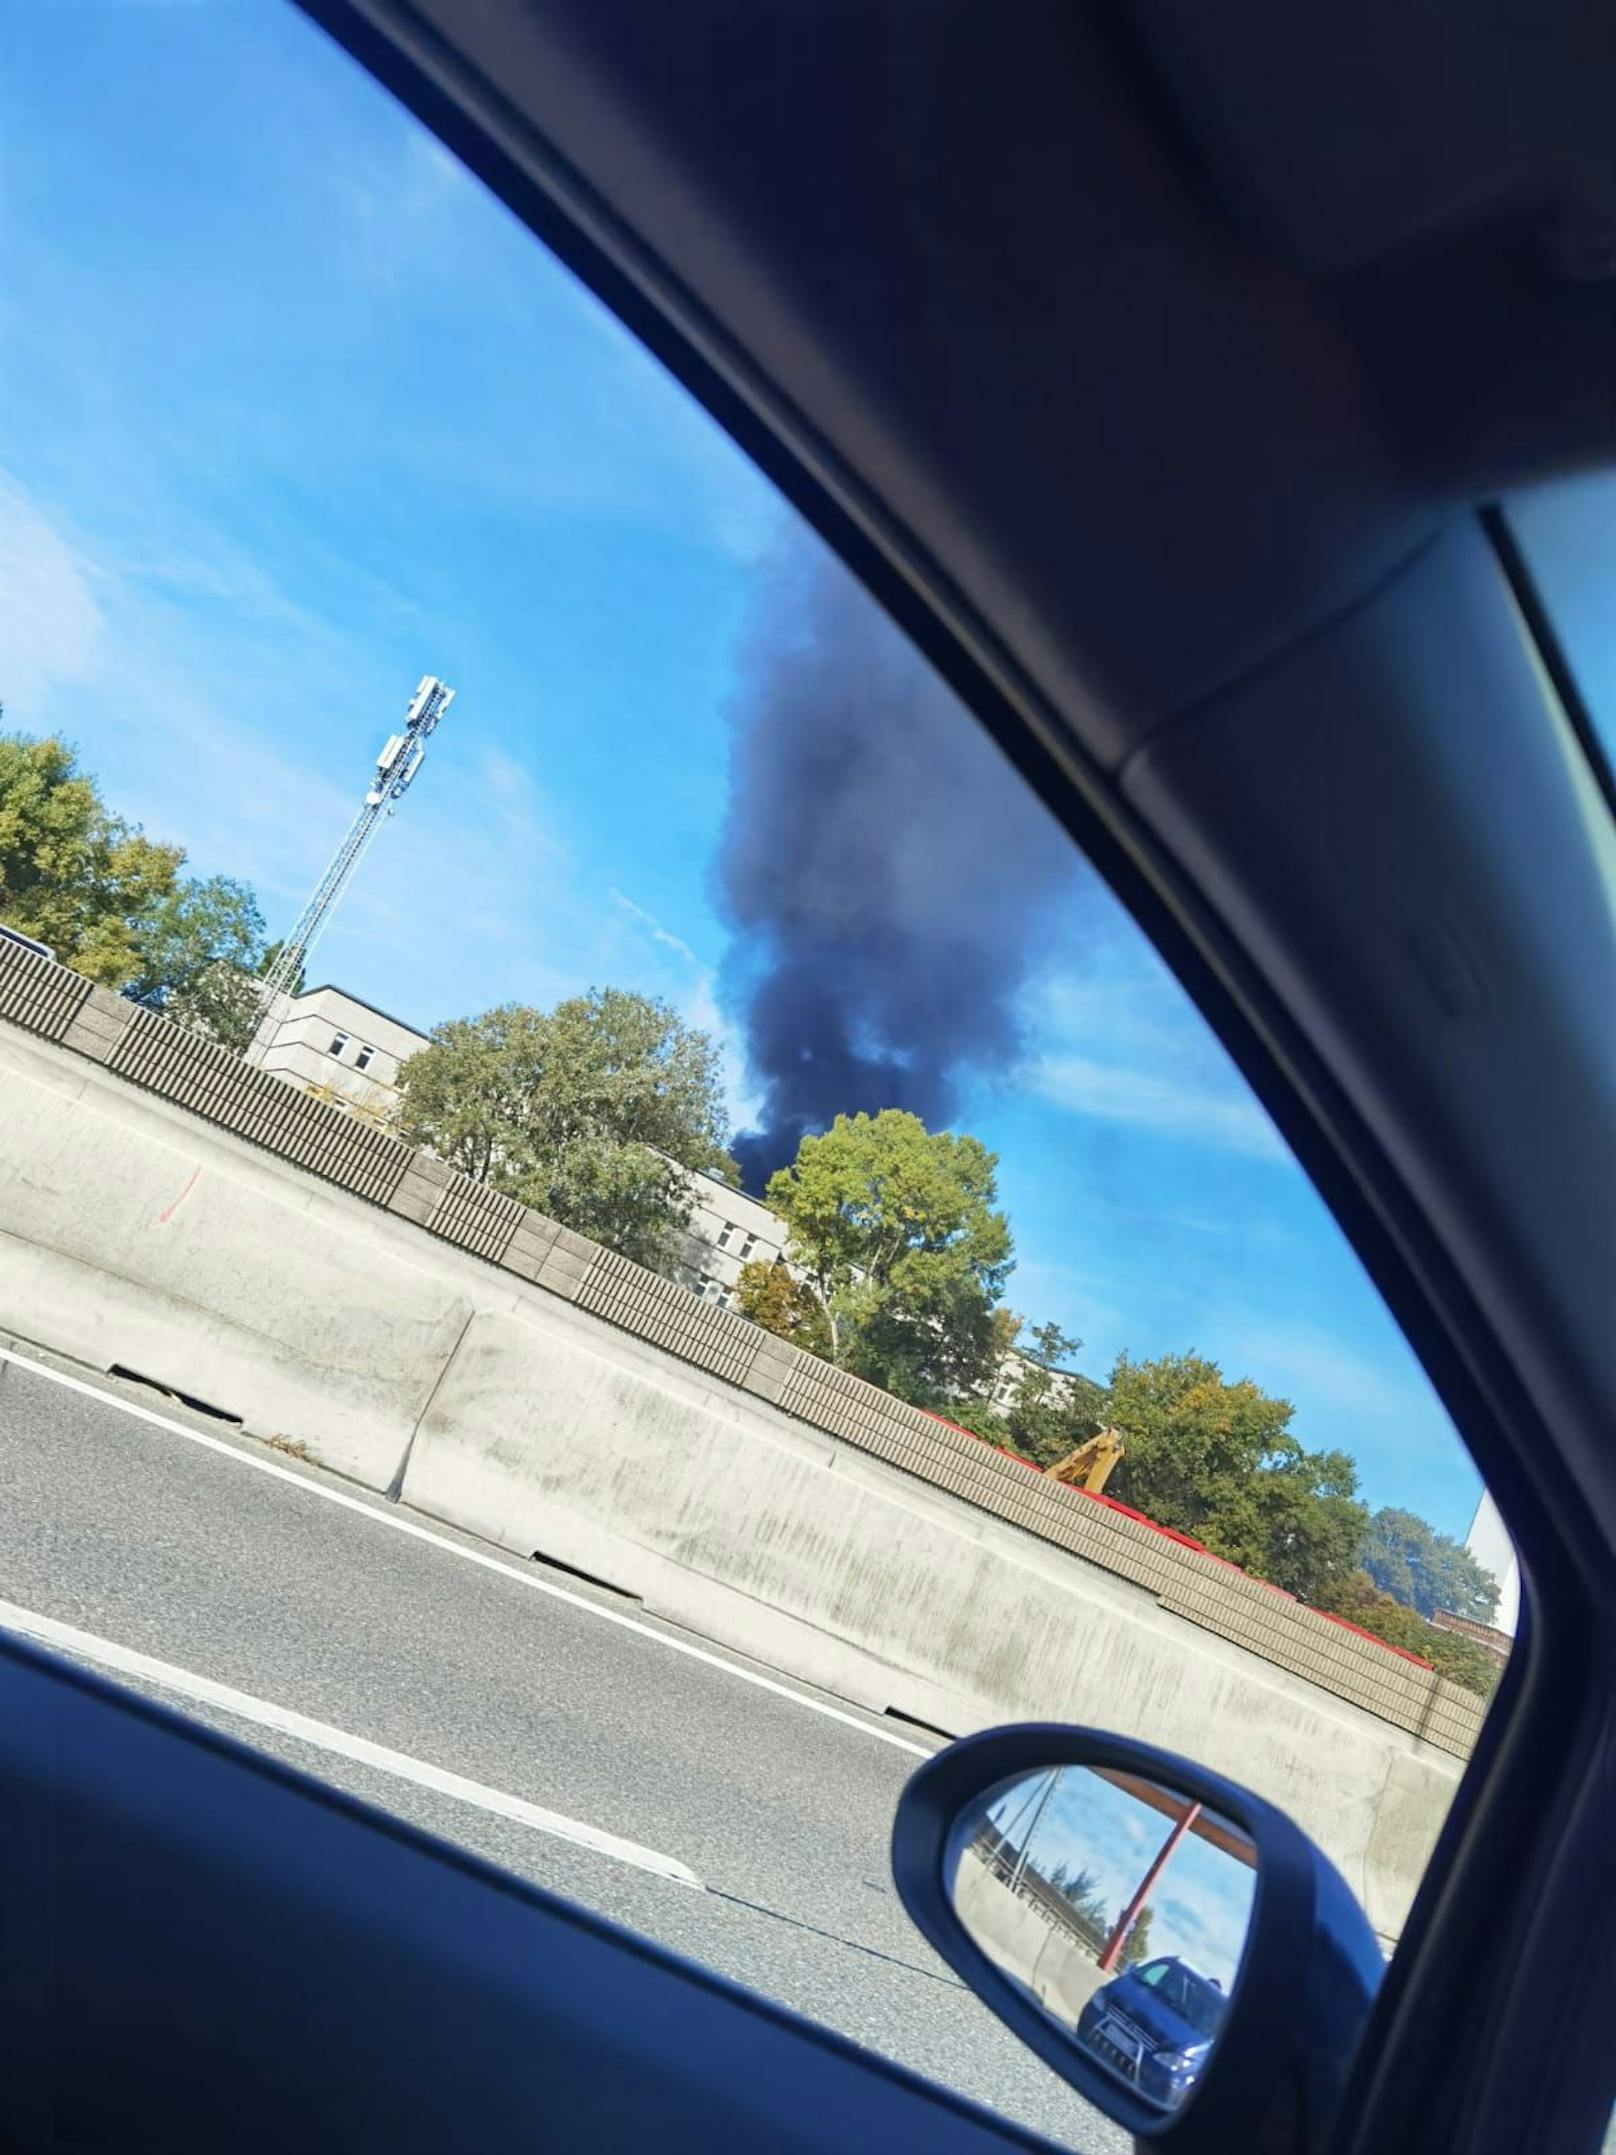 Sonntagvormittag kam es zu einem Brand auf einer Tankstelle in Wien-Donaustadt. Die Rauchsäule war kilometerweit zu sehen.